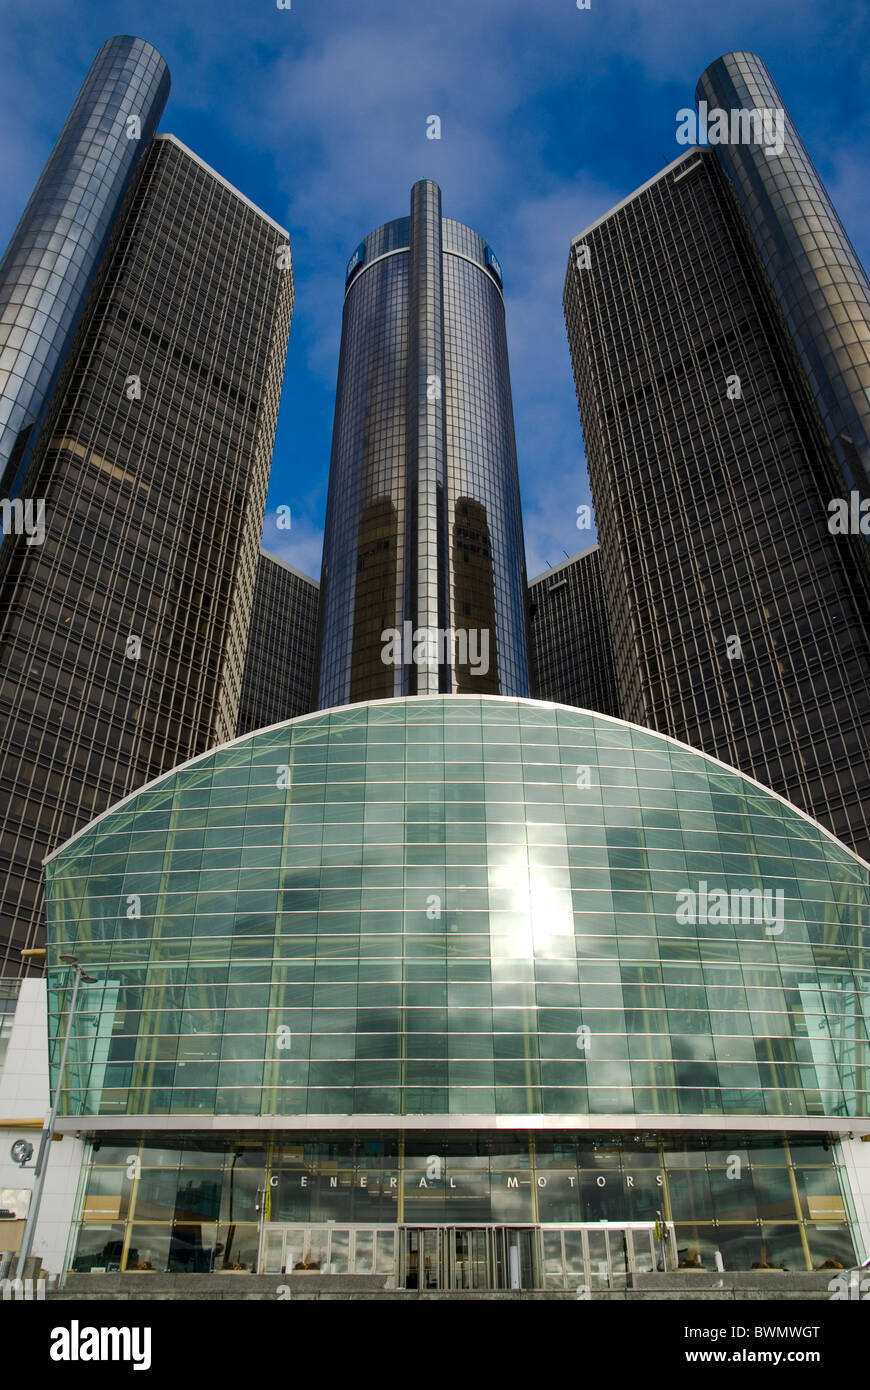 Il GM Renaissance Center è un gruppo di sette grattacieli interconnessi nel centro di Detroit, Michigan, Stati Uniti. Foto Stock